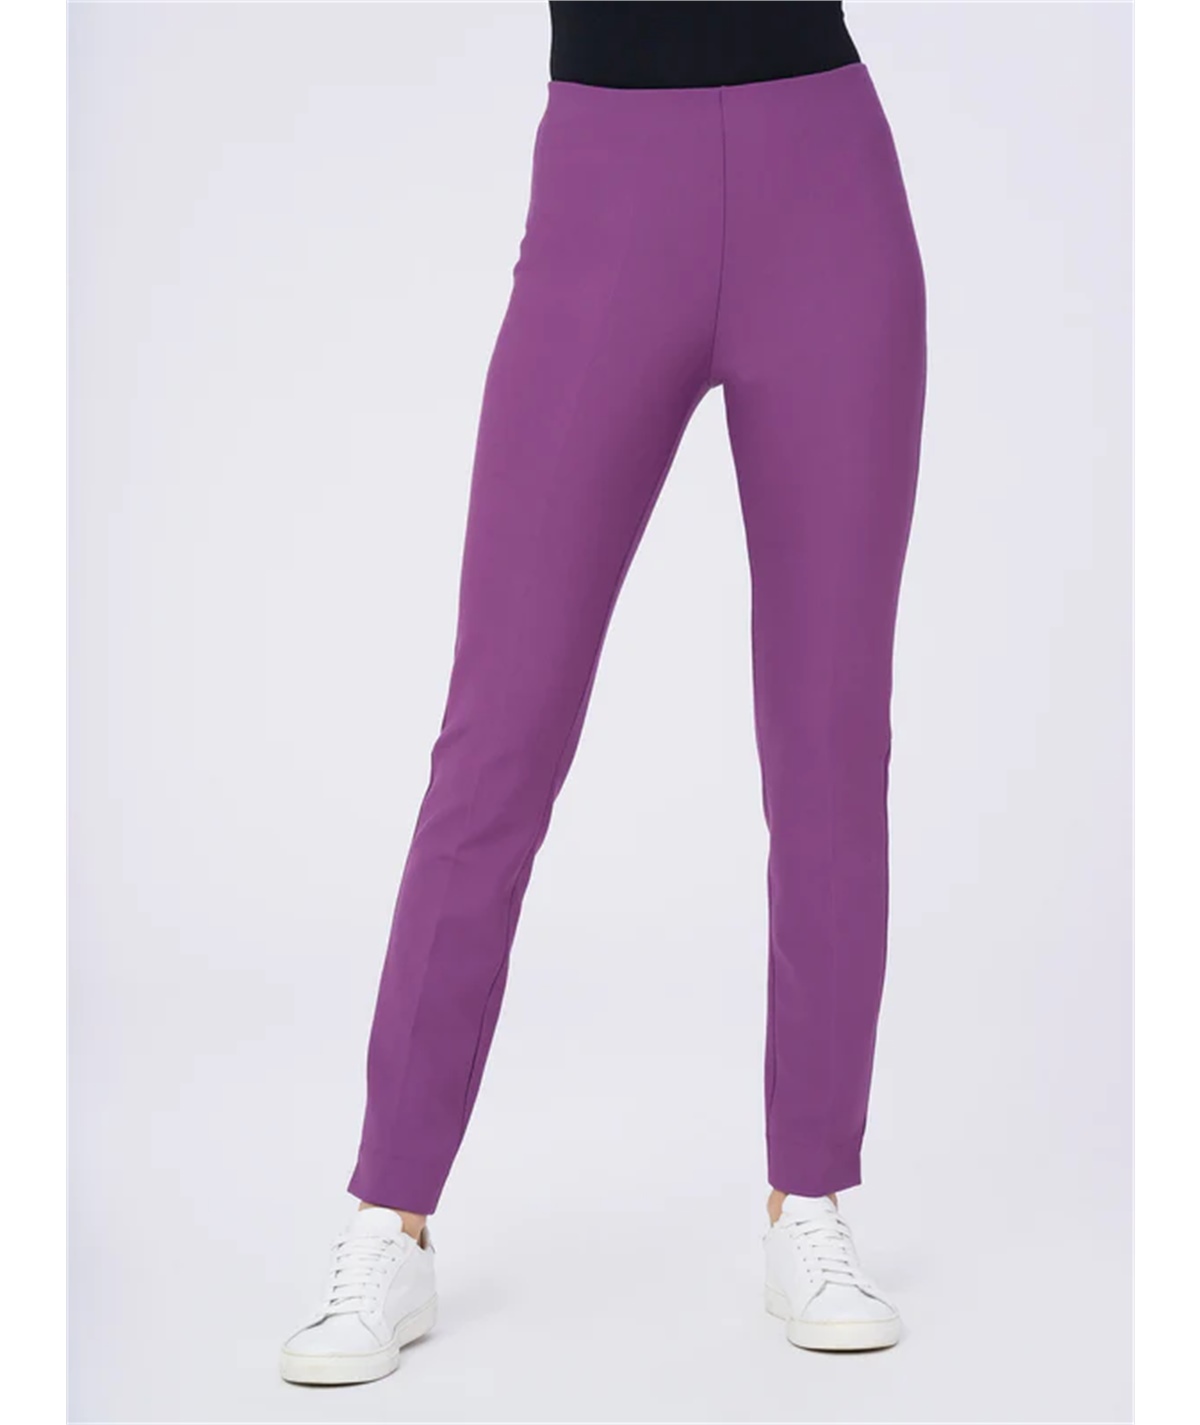 Ragno DE72PS - Pantalone Slim in tessuto Compact elasticizzato - Colore: Sunset Purple 948